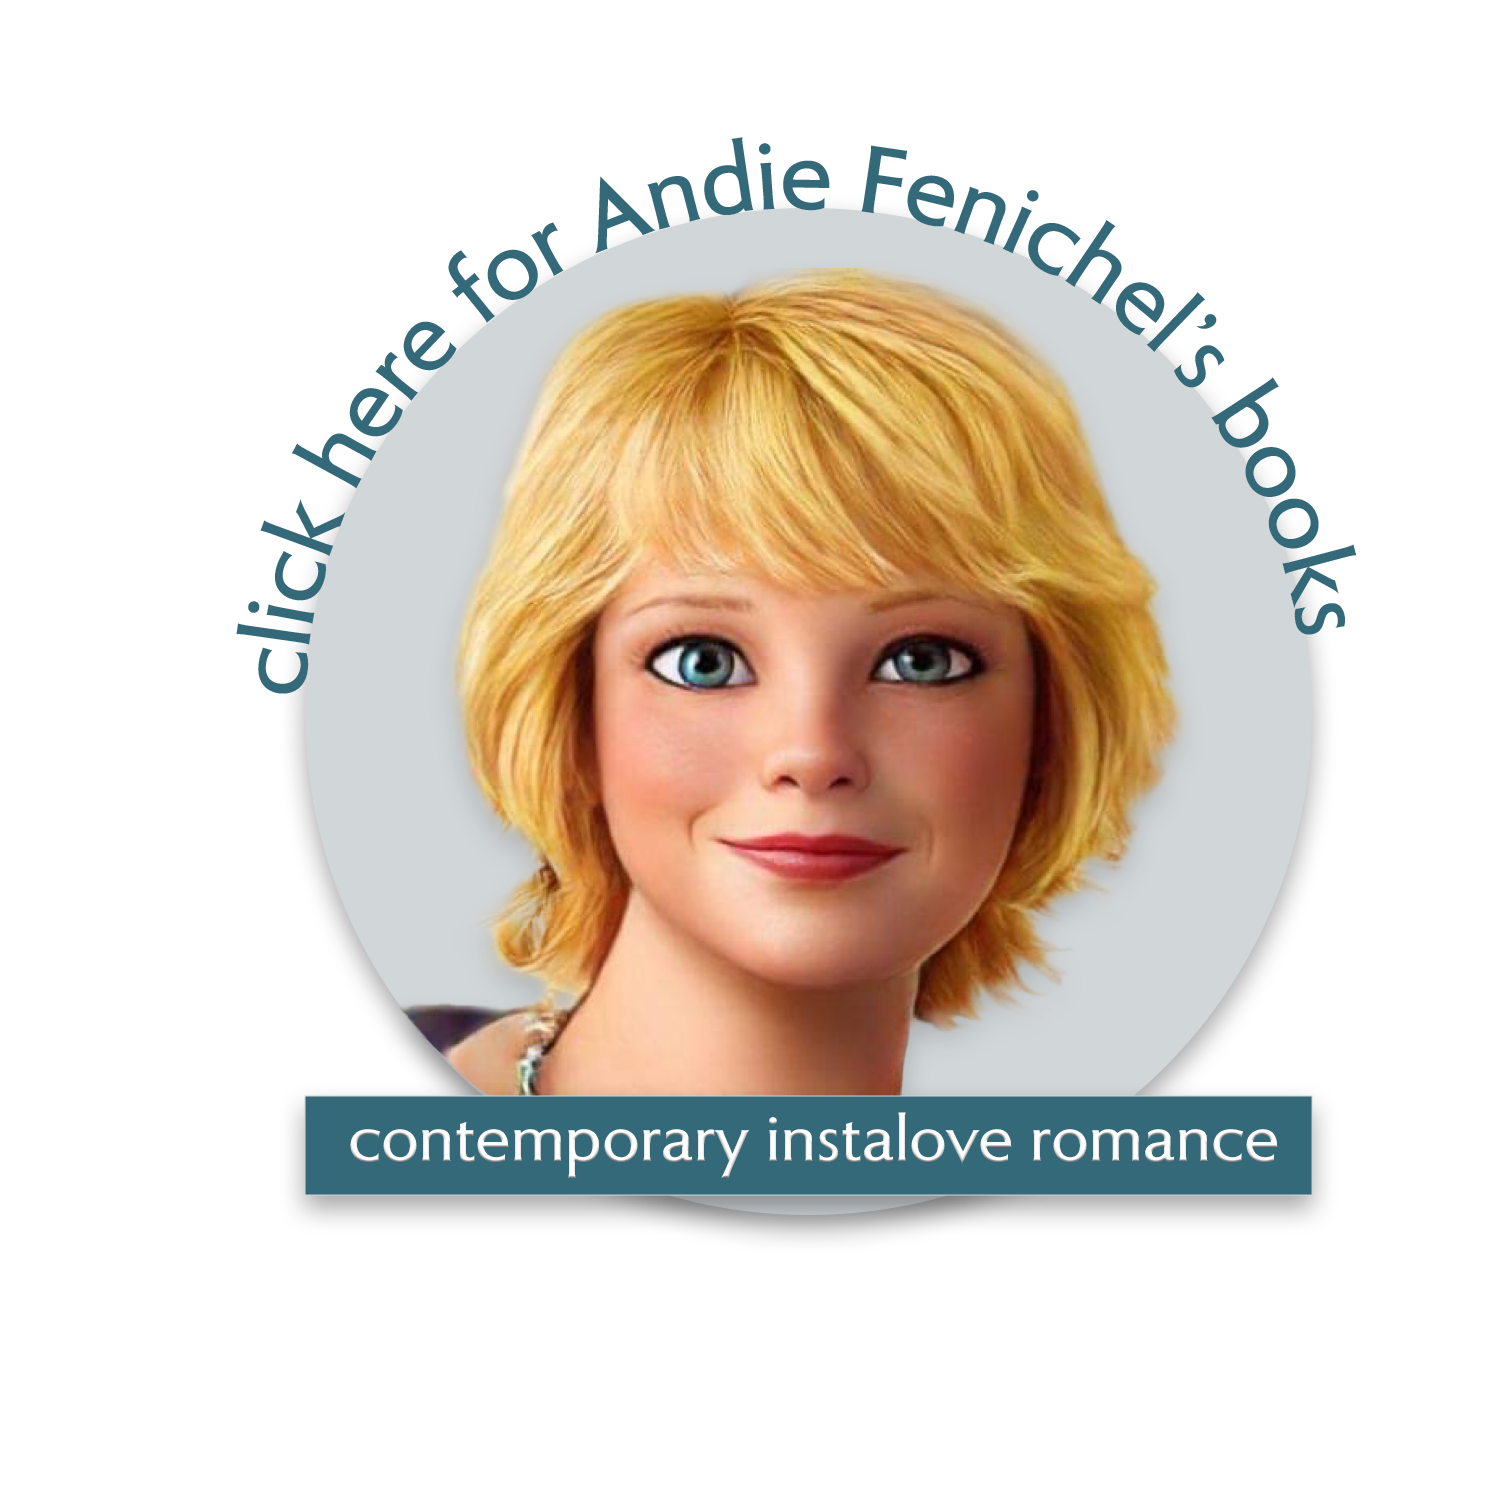 Andie-Fenichel-headshot-icon